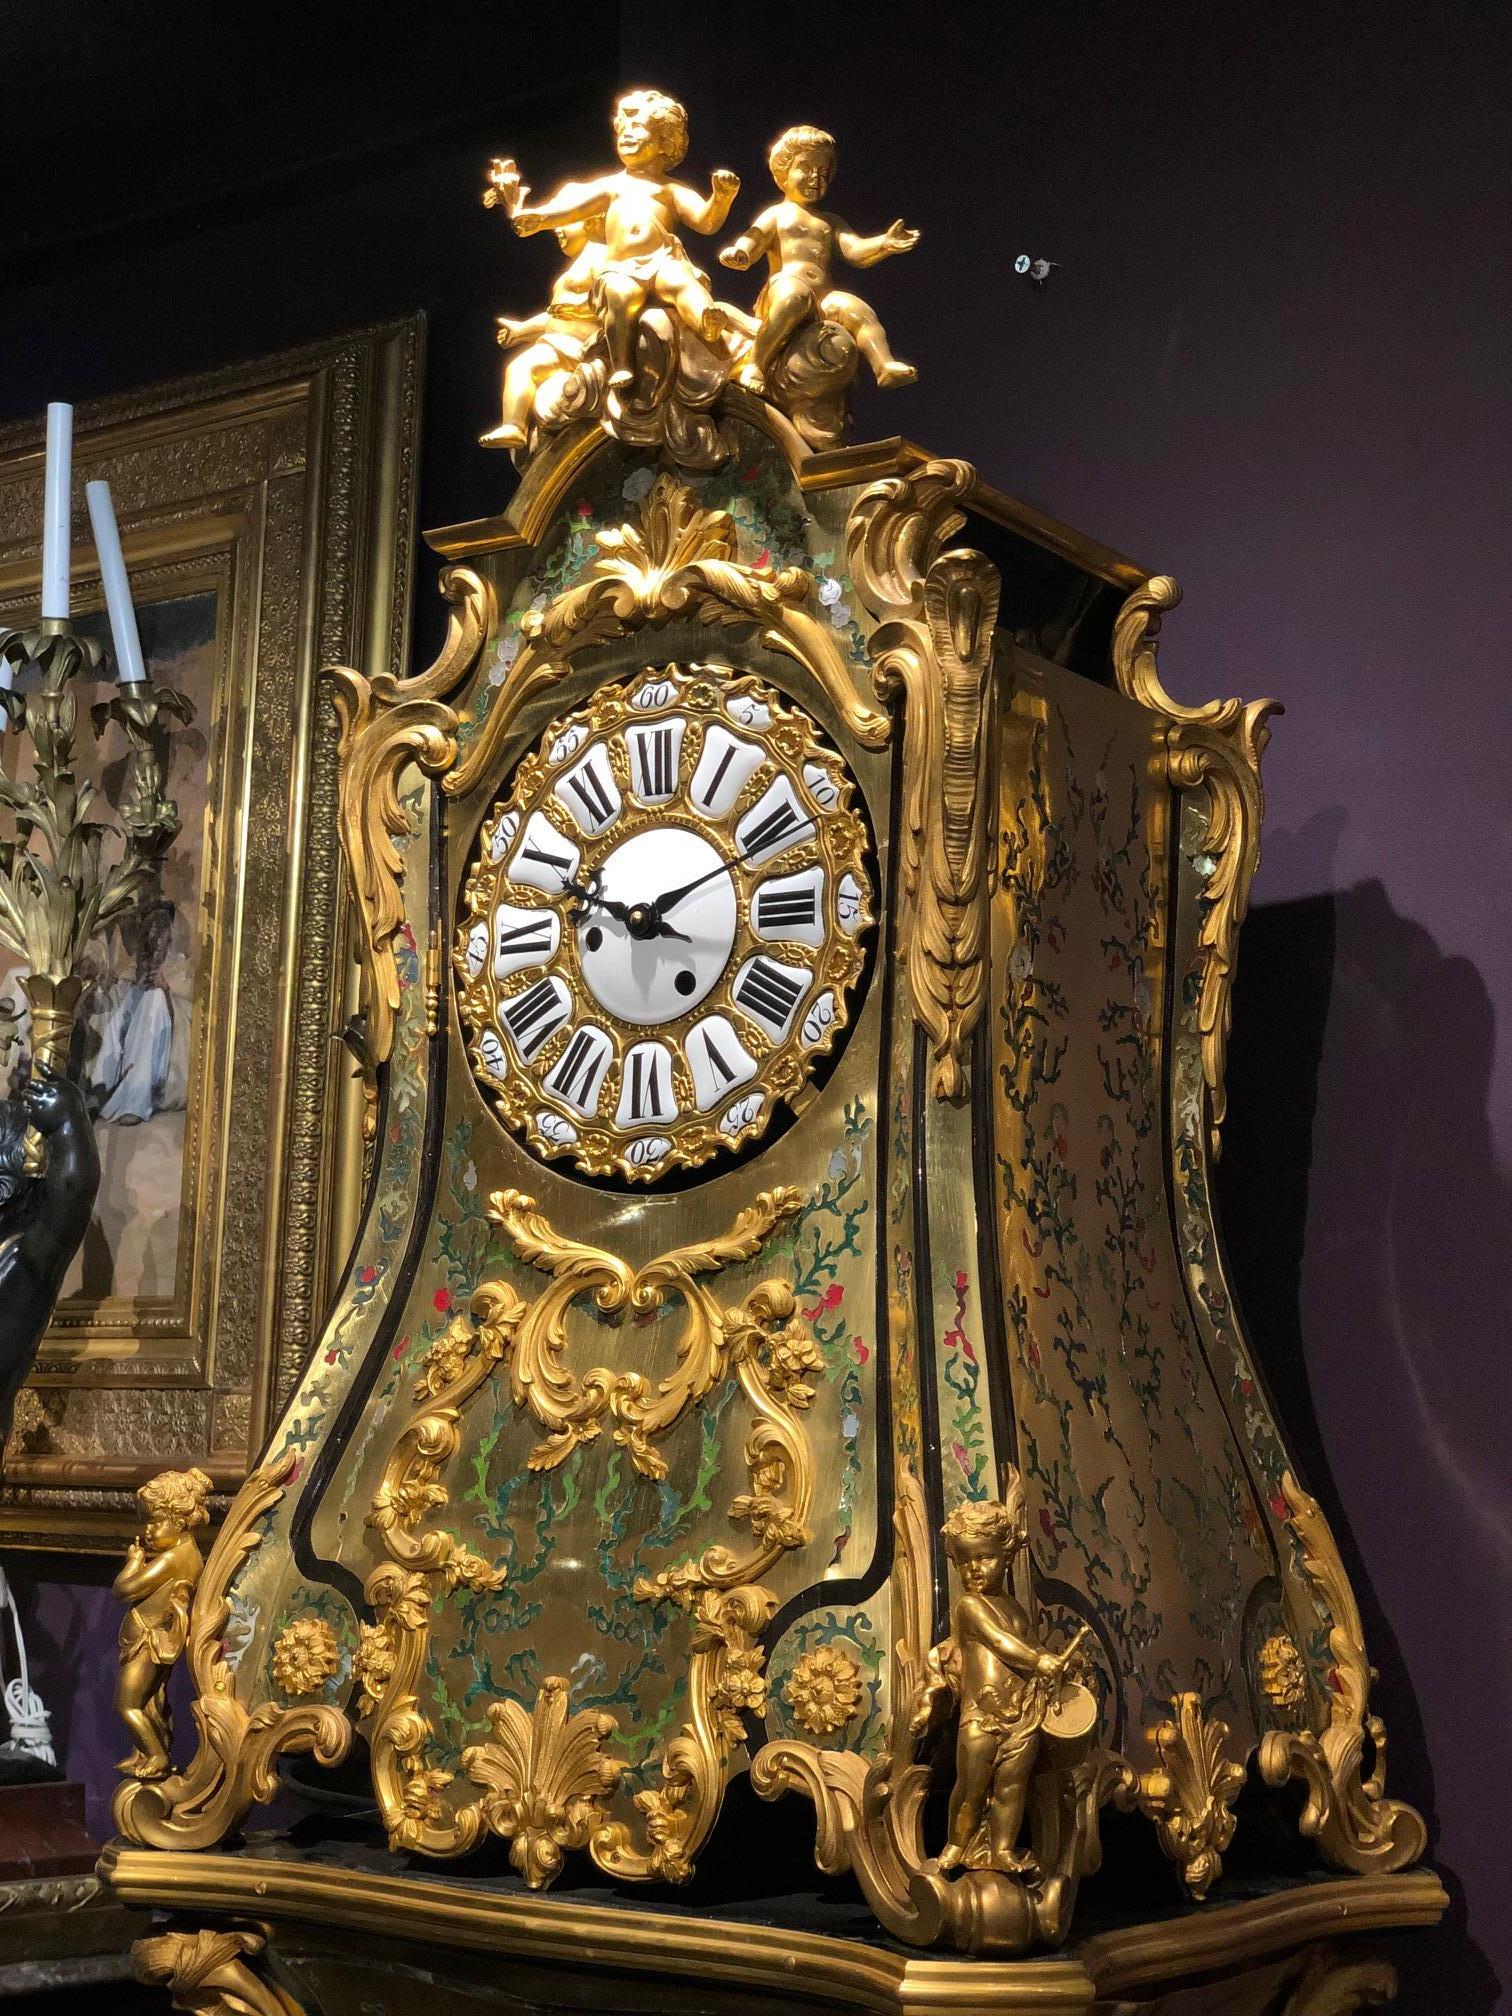 Eine seltene und bedeutende französische Uhr im Stil Ludwigs XIV. mit vergoldeter Bronze und grüner Boulle-Marketerie, Regulateur De Parquet, mit passendem Originalsockel, um 1890. Nach dem Modell von Jean-Pierre Latz.

Diese fabelhafte Uhr und